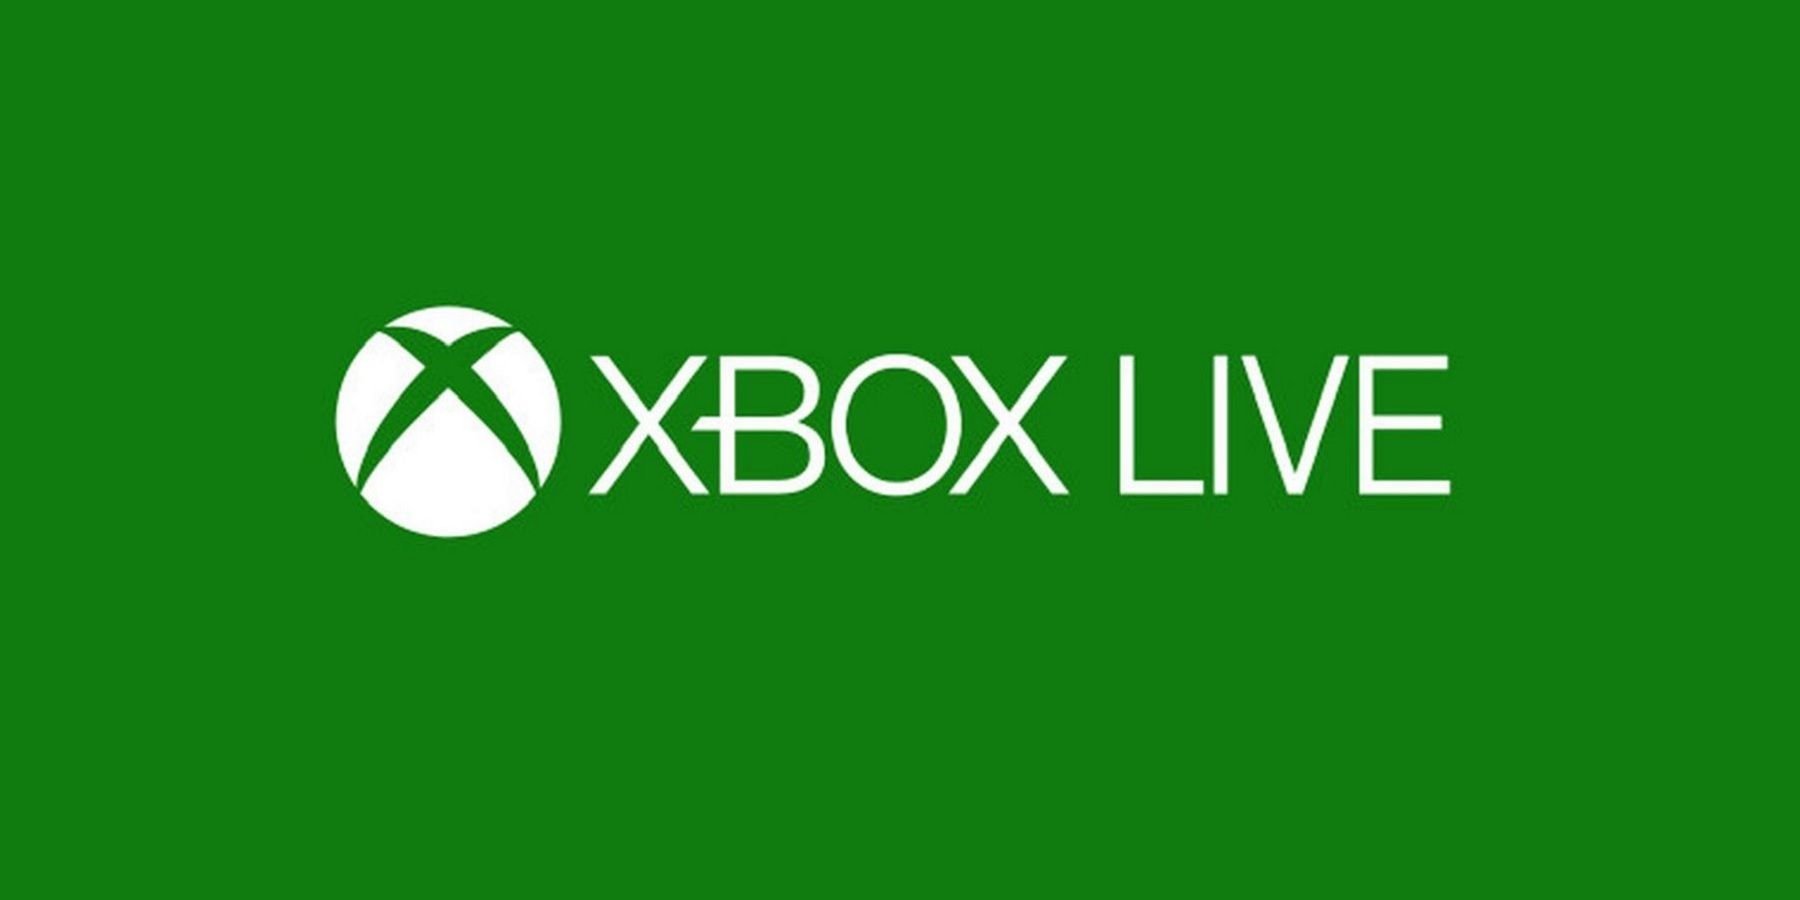 Xbox Live goes down again